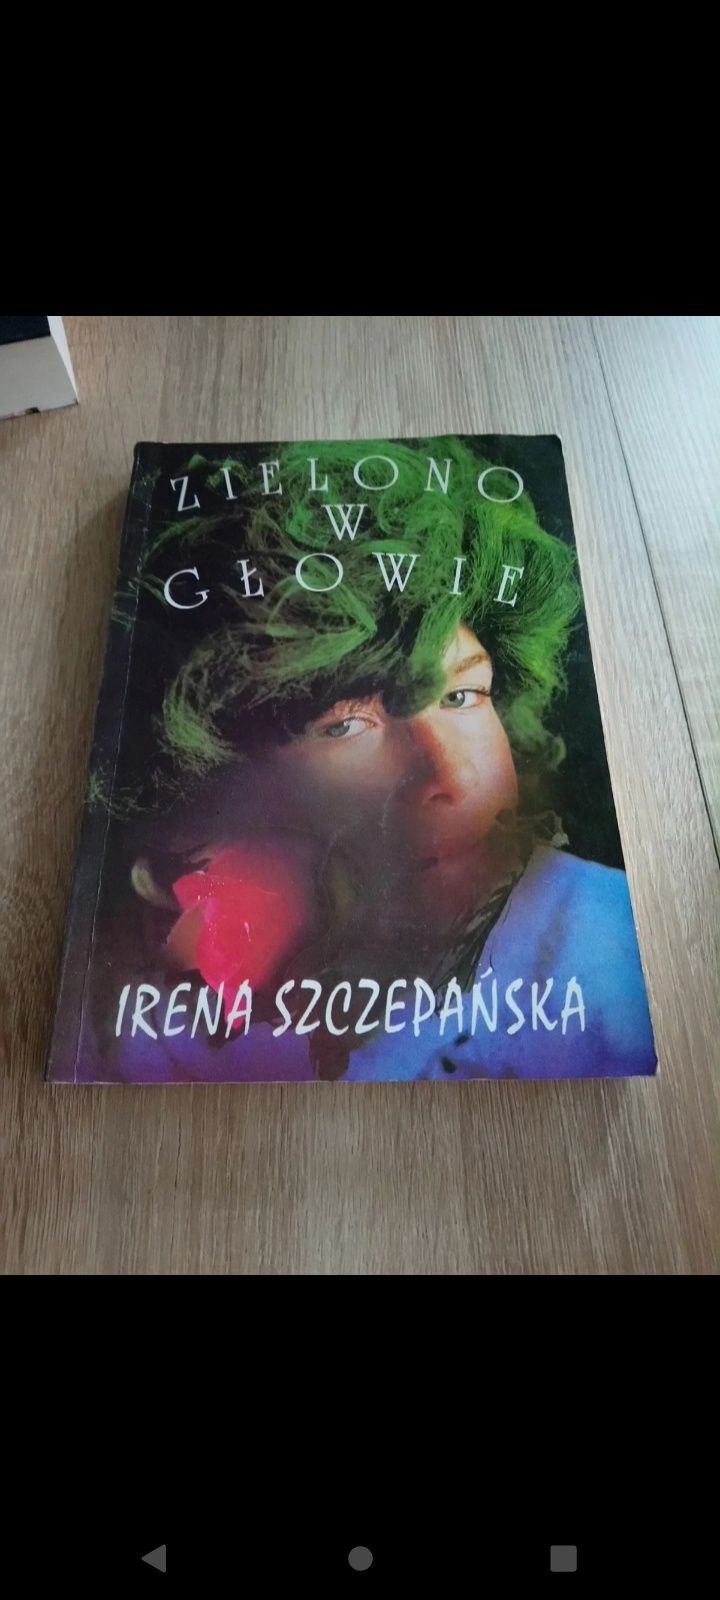 Irena Szczepańska - "Zielono w głowie"